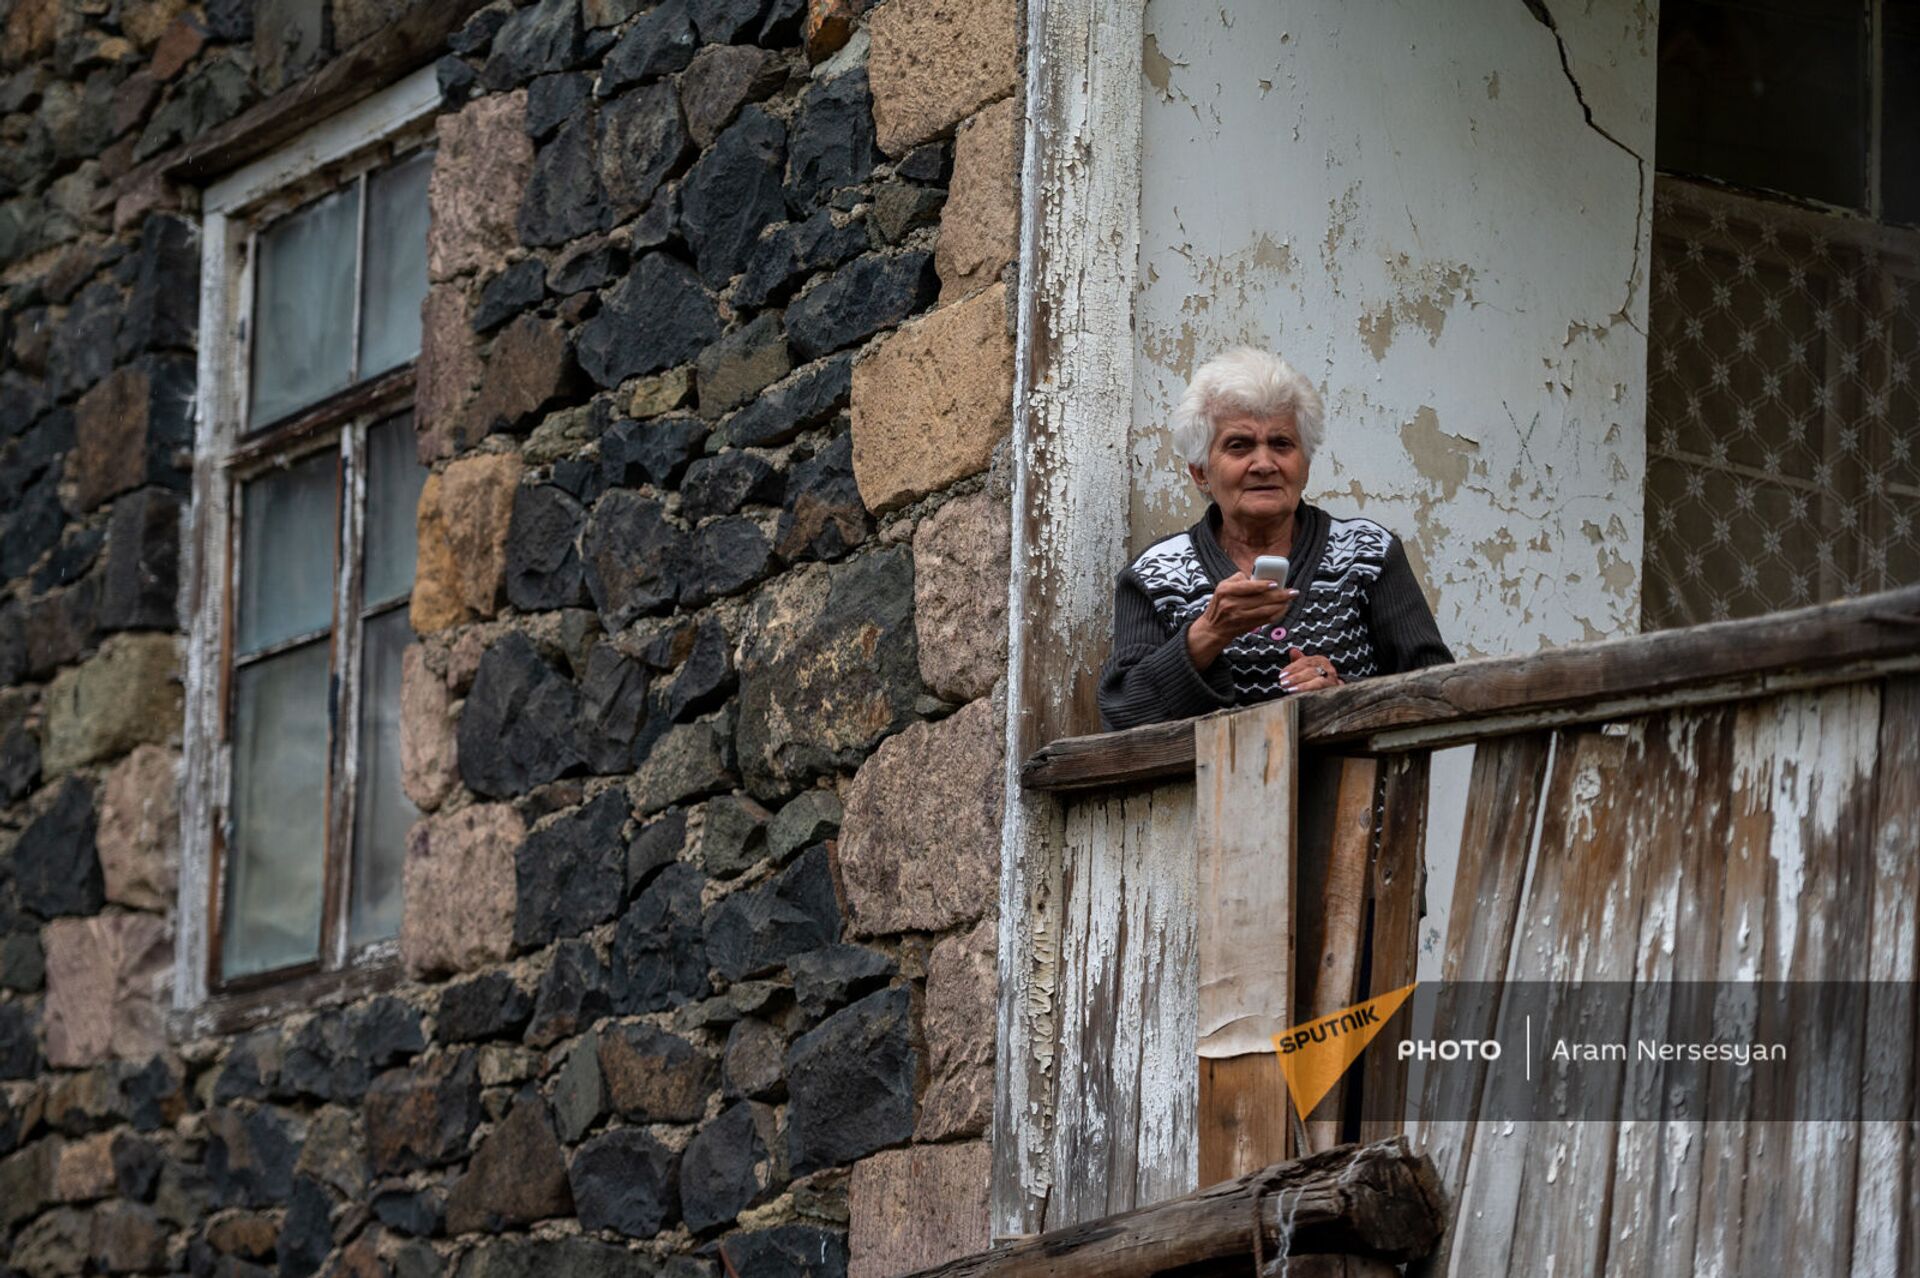 Լոռվա գյուղում ընդամենը 20 մարդ է ապրում, կամ հունական կոլորիտ` անսովոր լռության մեջ - Sputnik Արմենիա, 1920, 24.06.2021